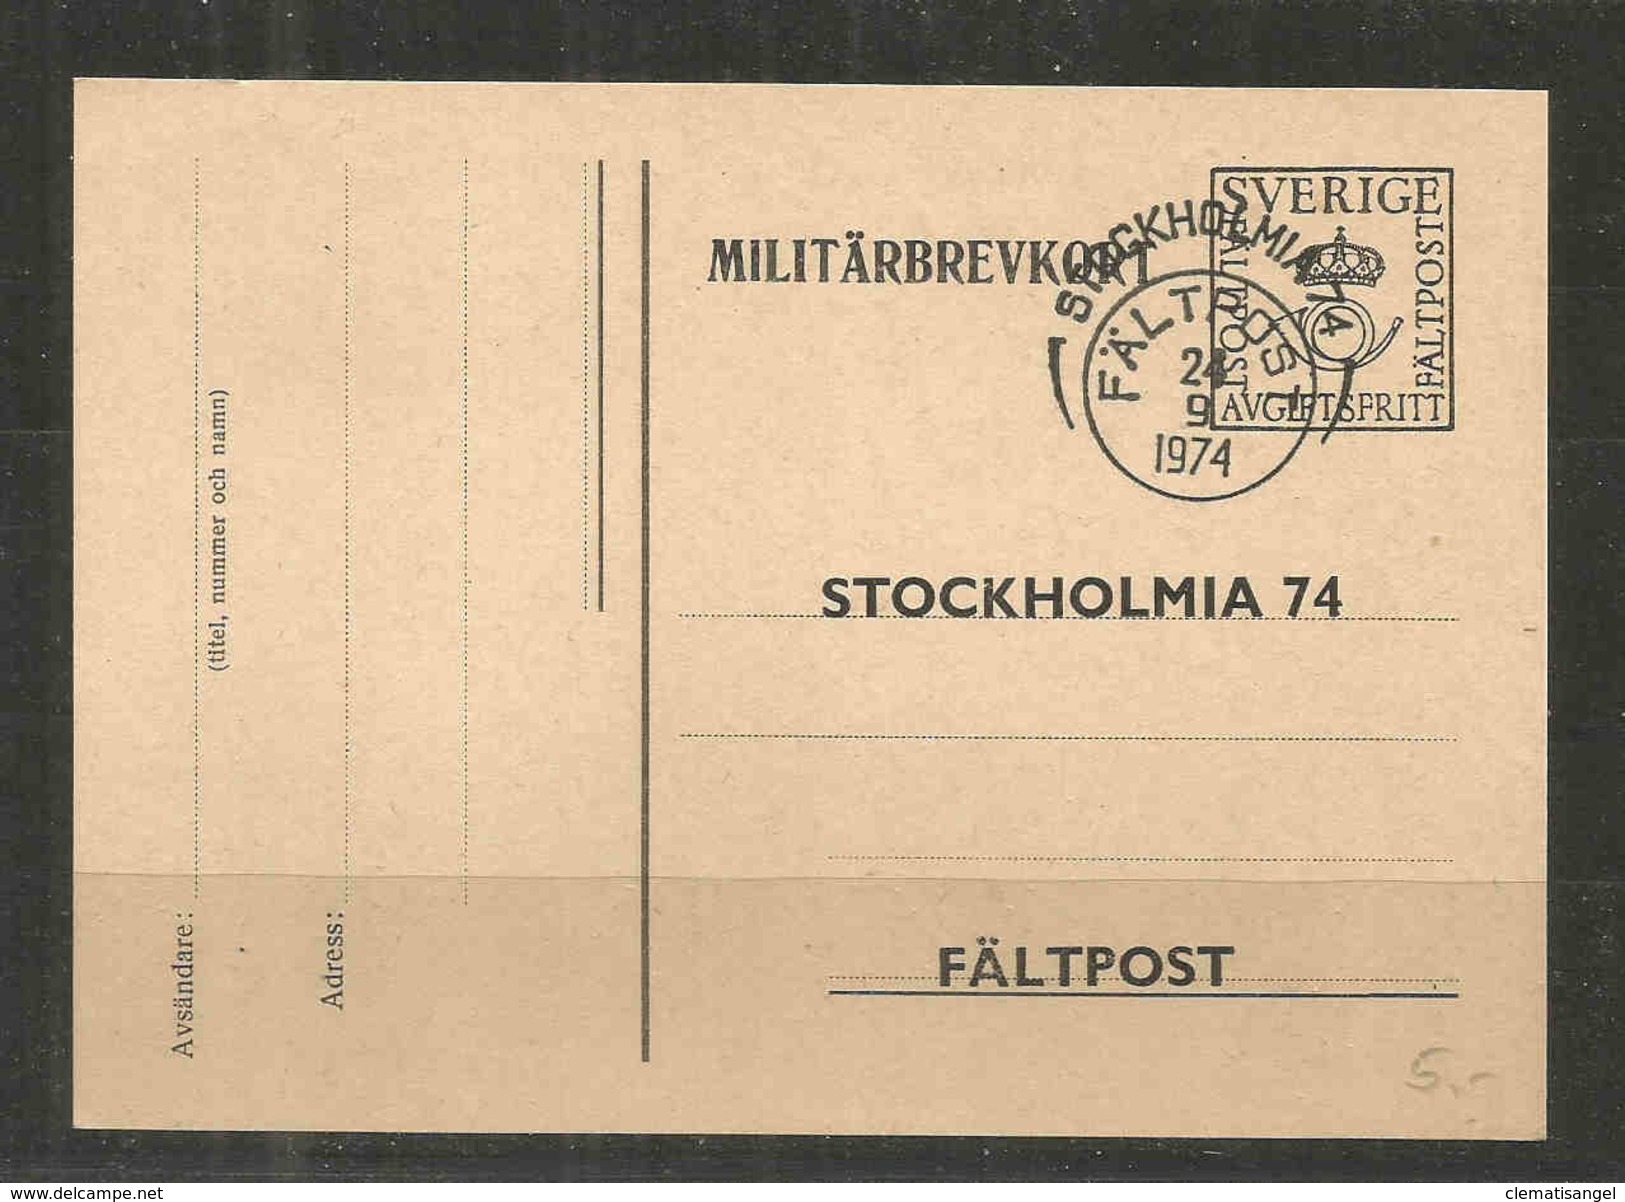 13i * SCHWEDEN * MILITÄRBRIEFKARTE * VON DER STOCKHOLMIA 74 FÄLTPOST * 1974 *!! - Military